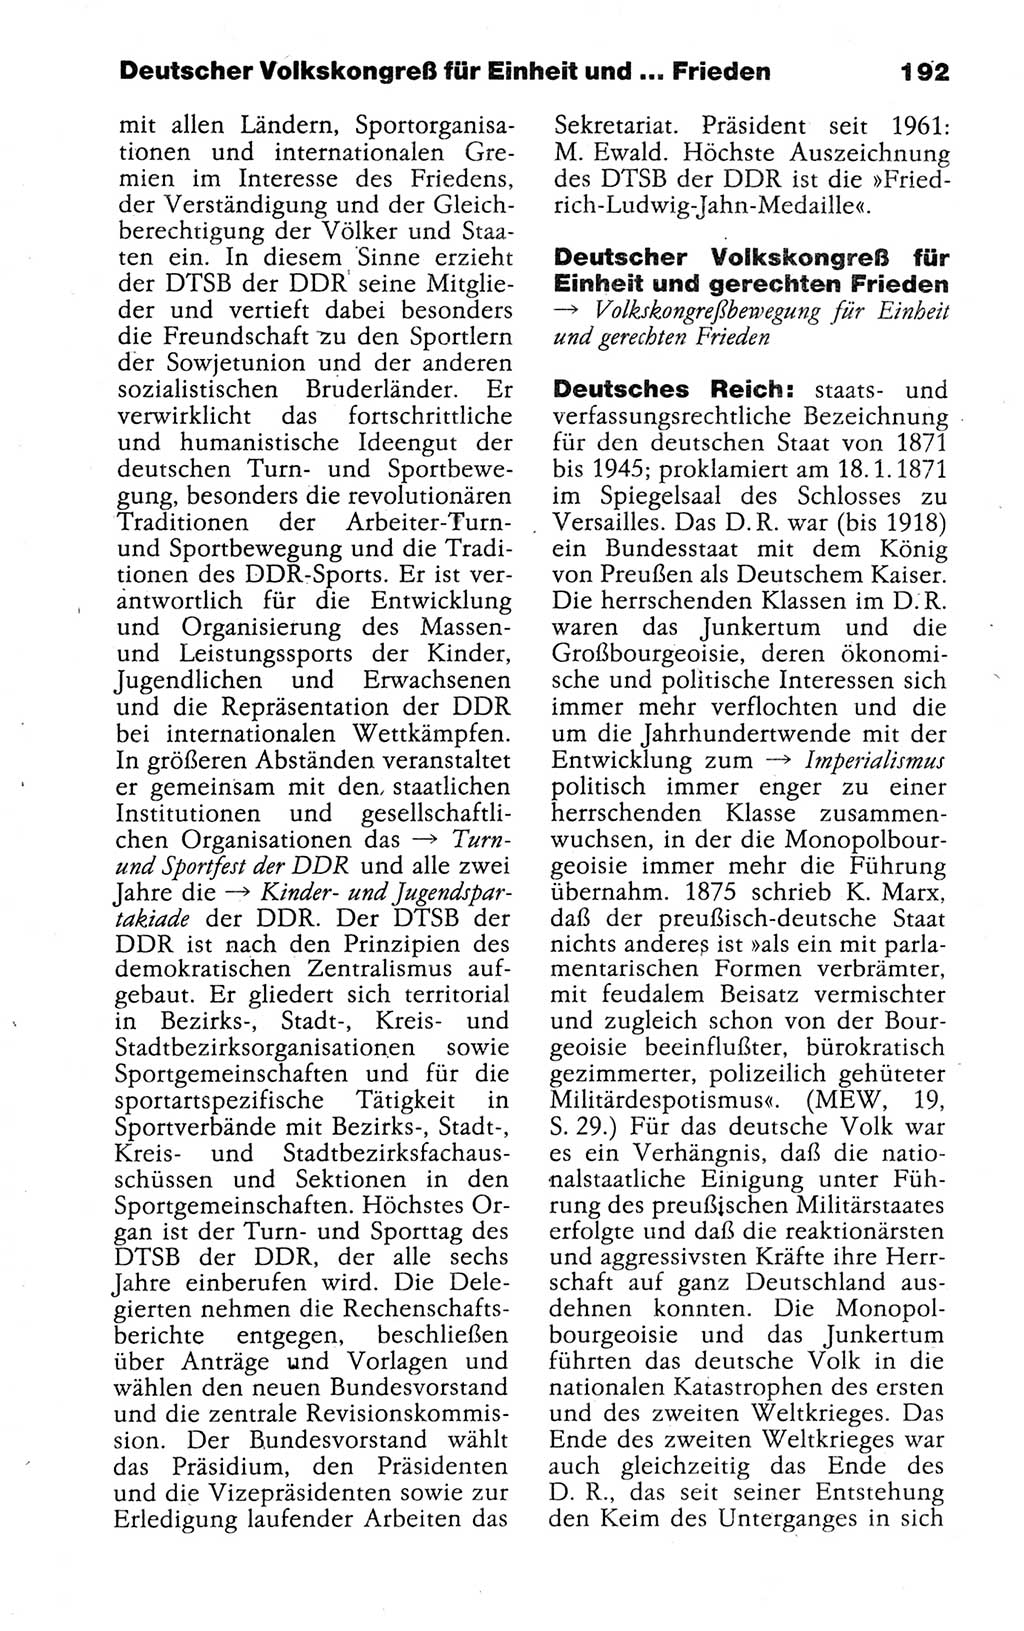 Kleines politisches Wörterbuch [Deutsche Demokratische Republik (DDR)] 1988, Seite 192 (Kl. pol. Wb. DDR 1988, S. 192)